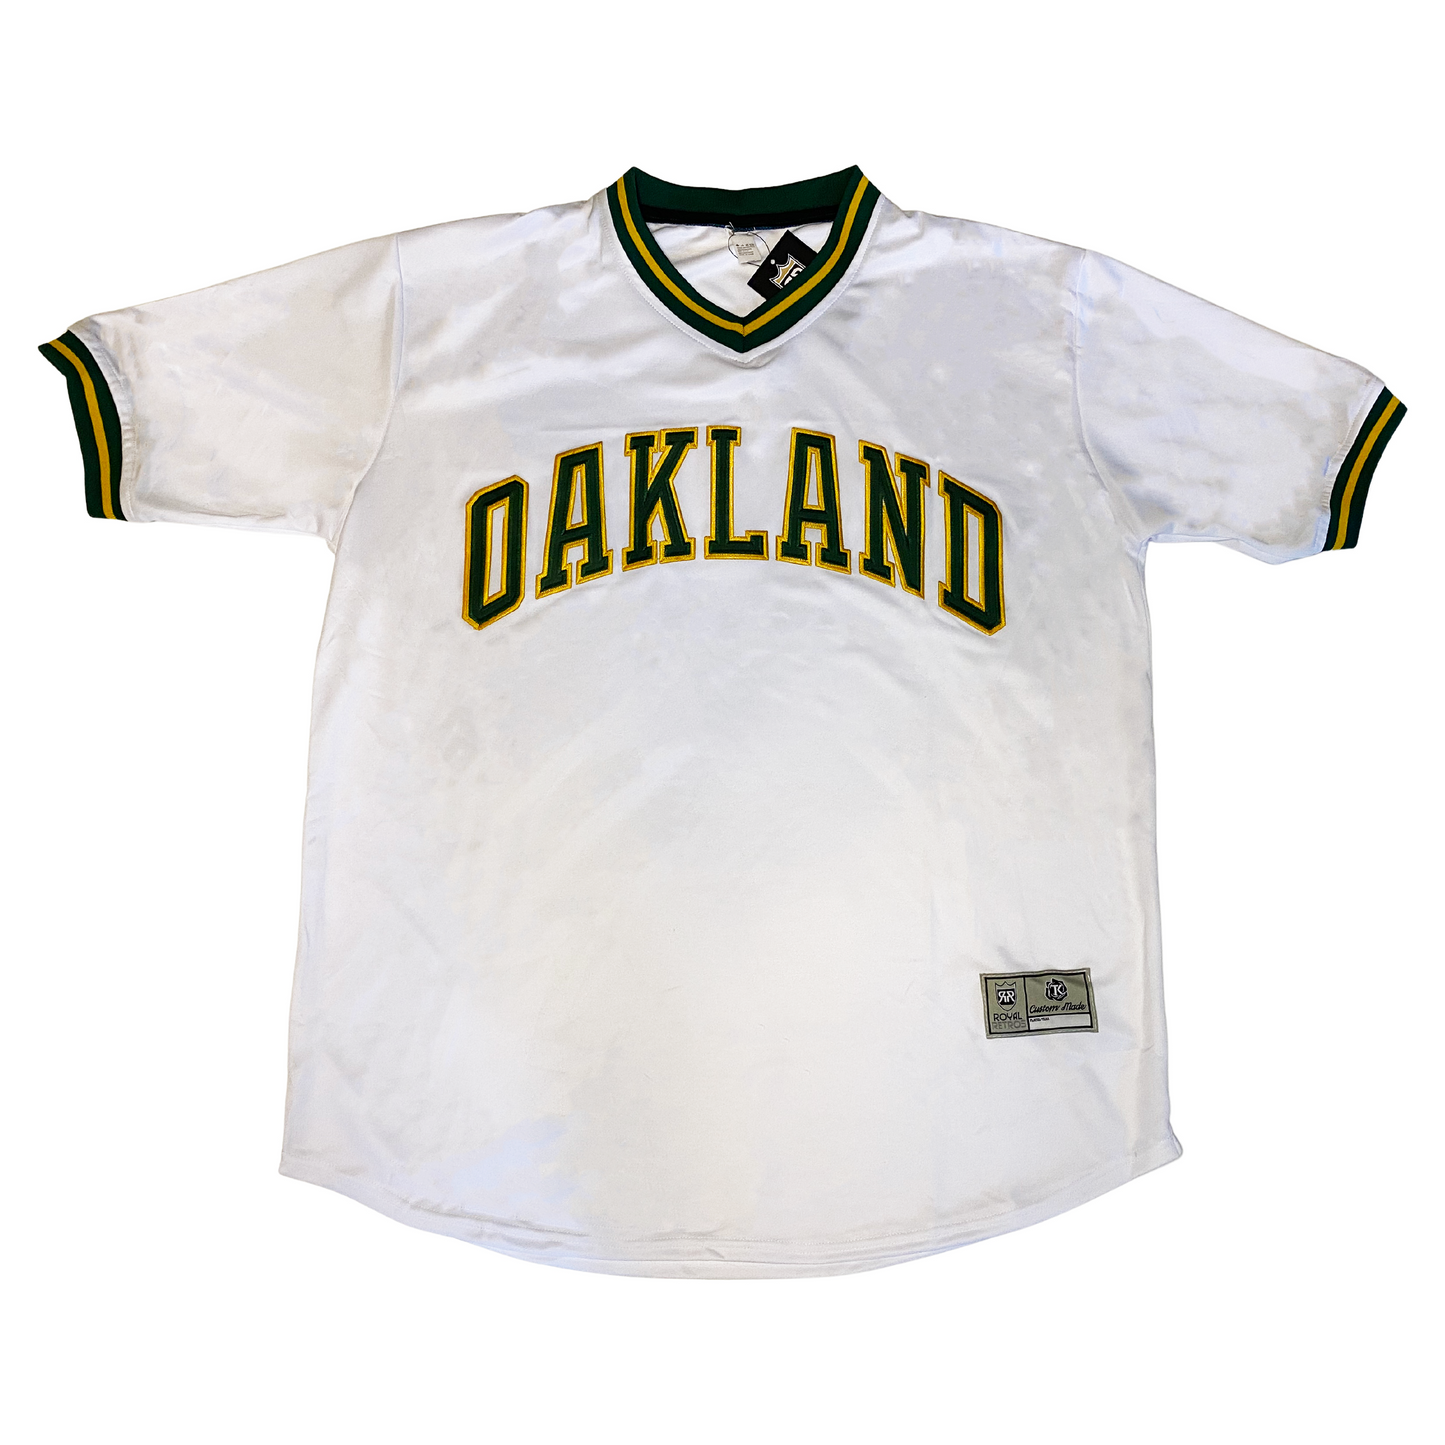 Oakland Baseball Jersey